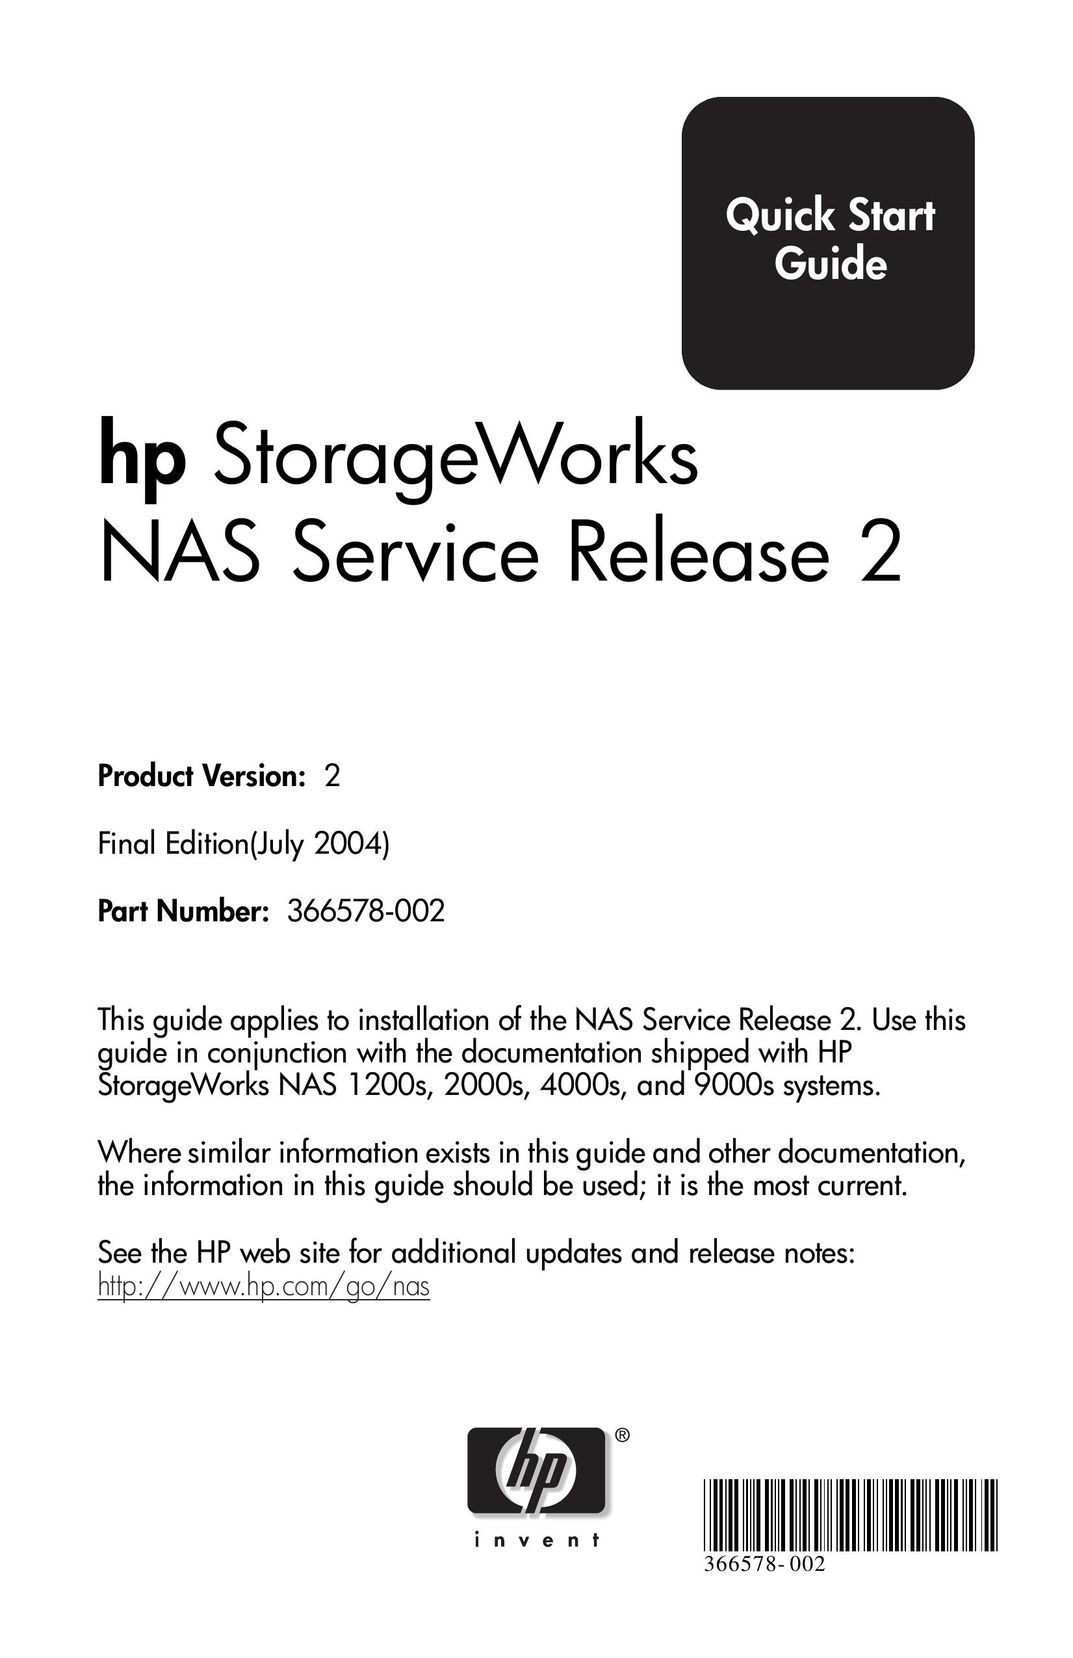 HP (Hewlett-Packard) 2000s Network Router User Manual